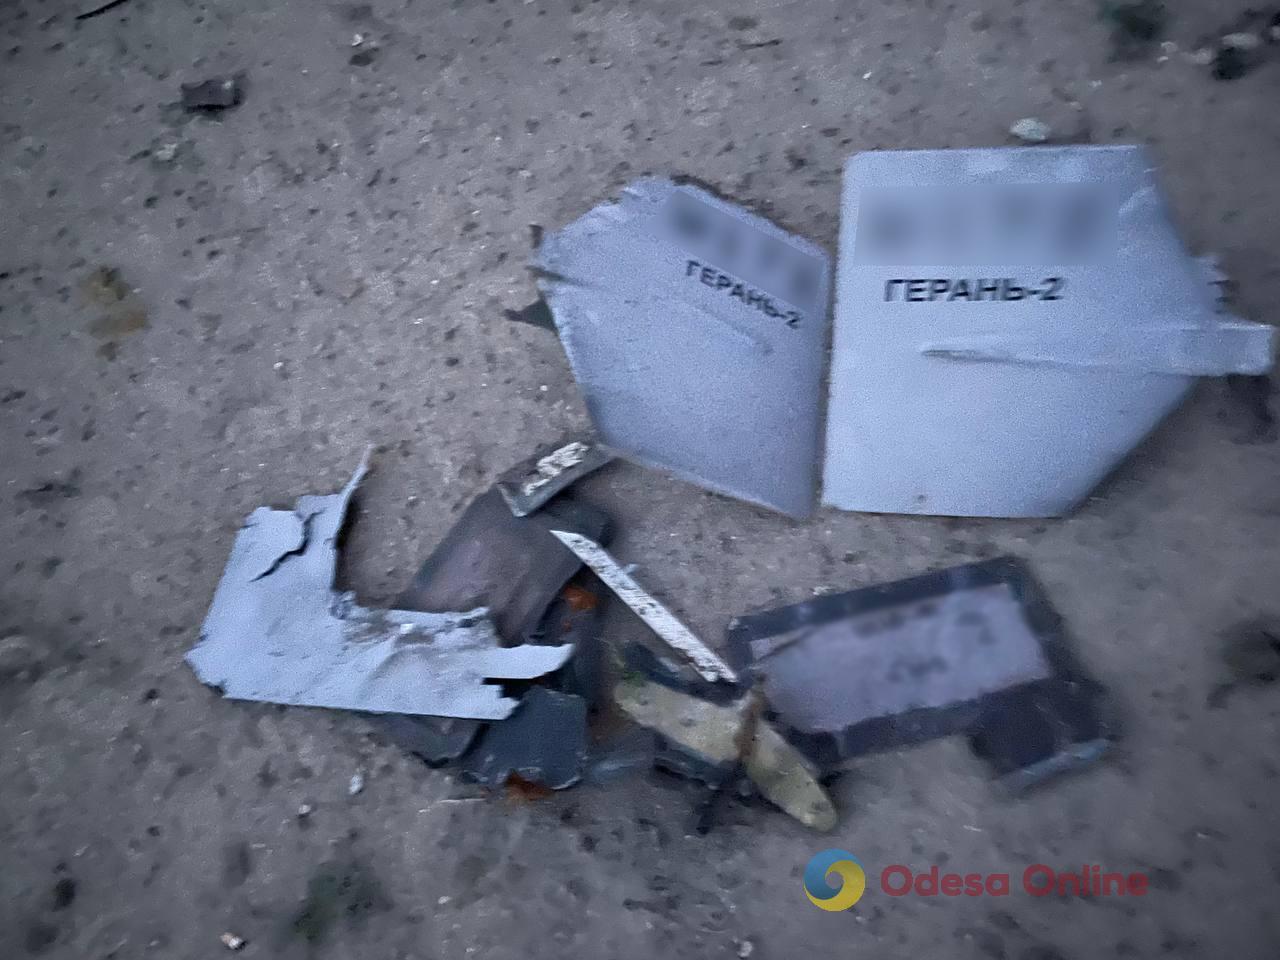 Пограничники показали обломки сбитых дронов на территории Одесской области (фото)